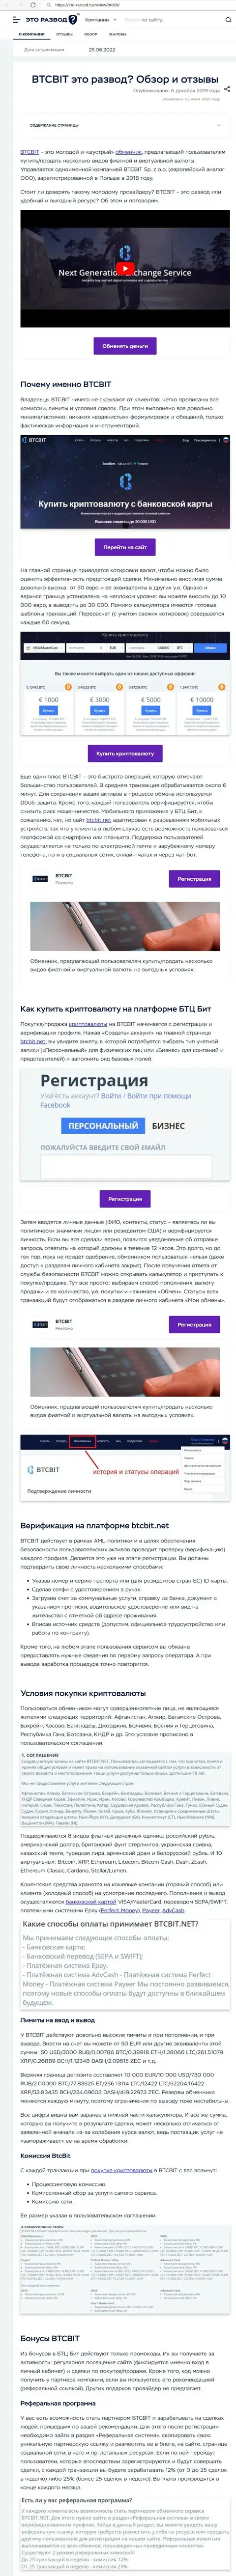 Обзор услуг и условия для сотрудничества обменника BTCBIT Sp. z.o.o в обзорной статье на сайте Eto-Razvod Ru